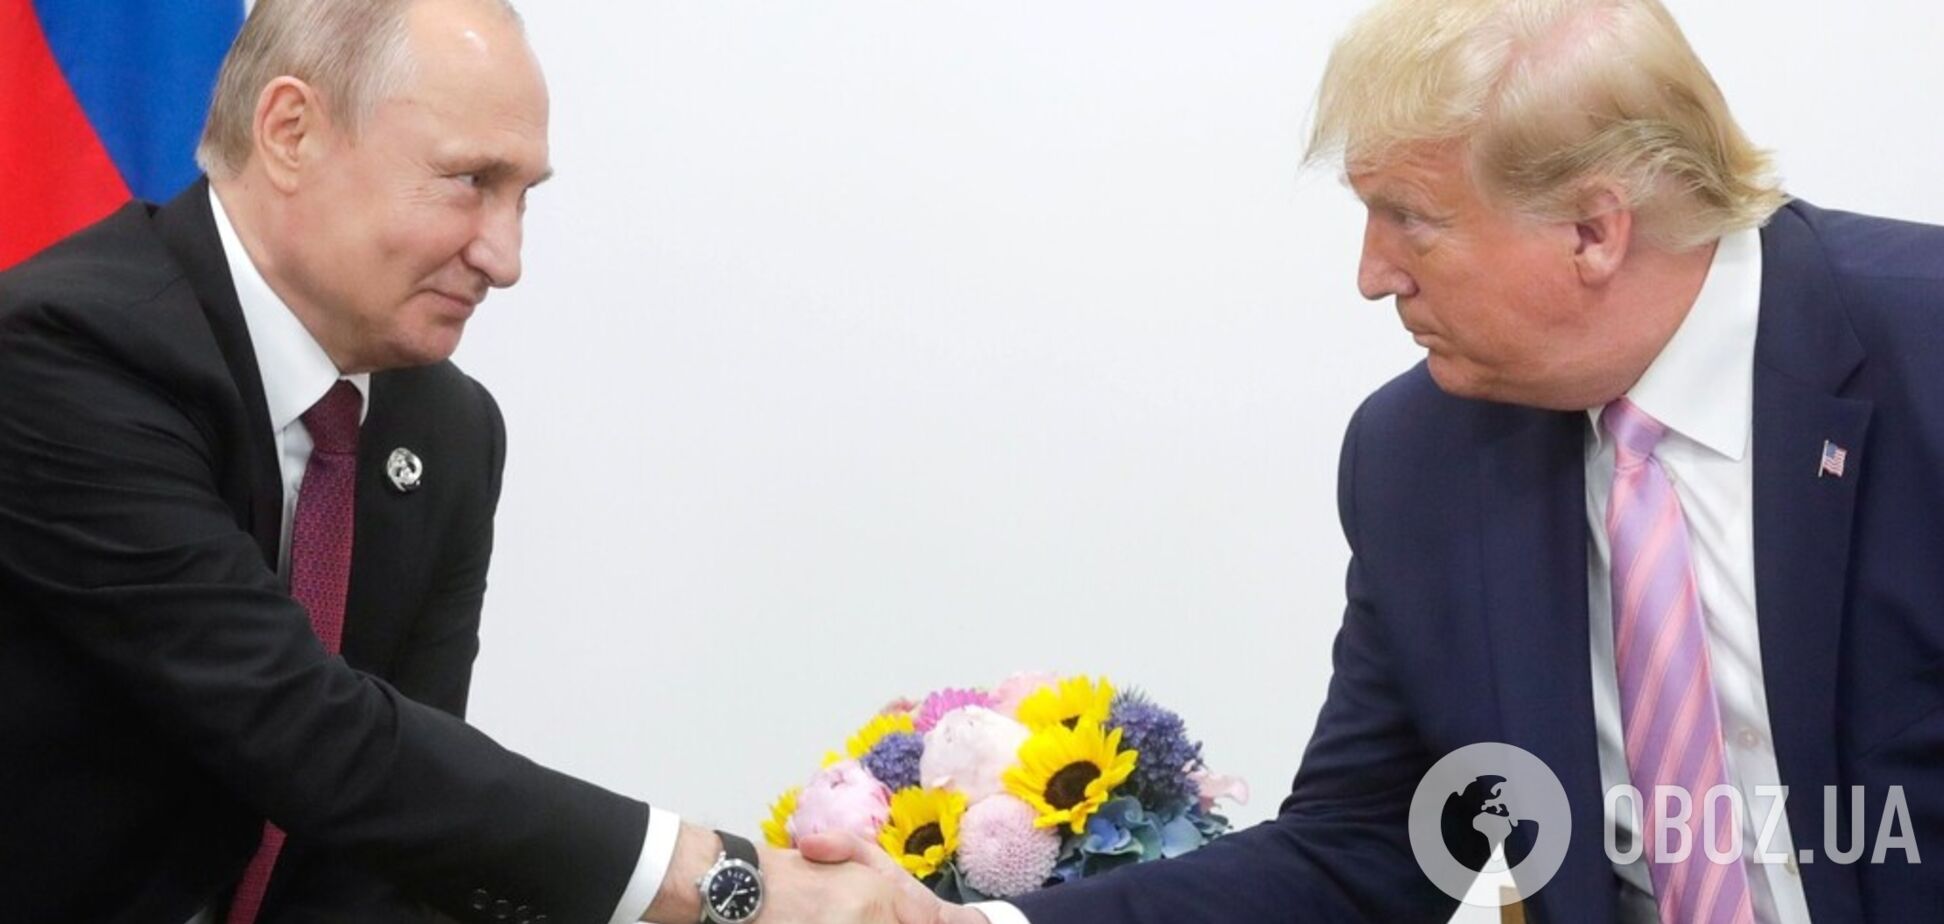 Трамп захотел заключить сделку с Путиным: о чем речь